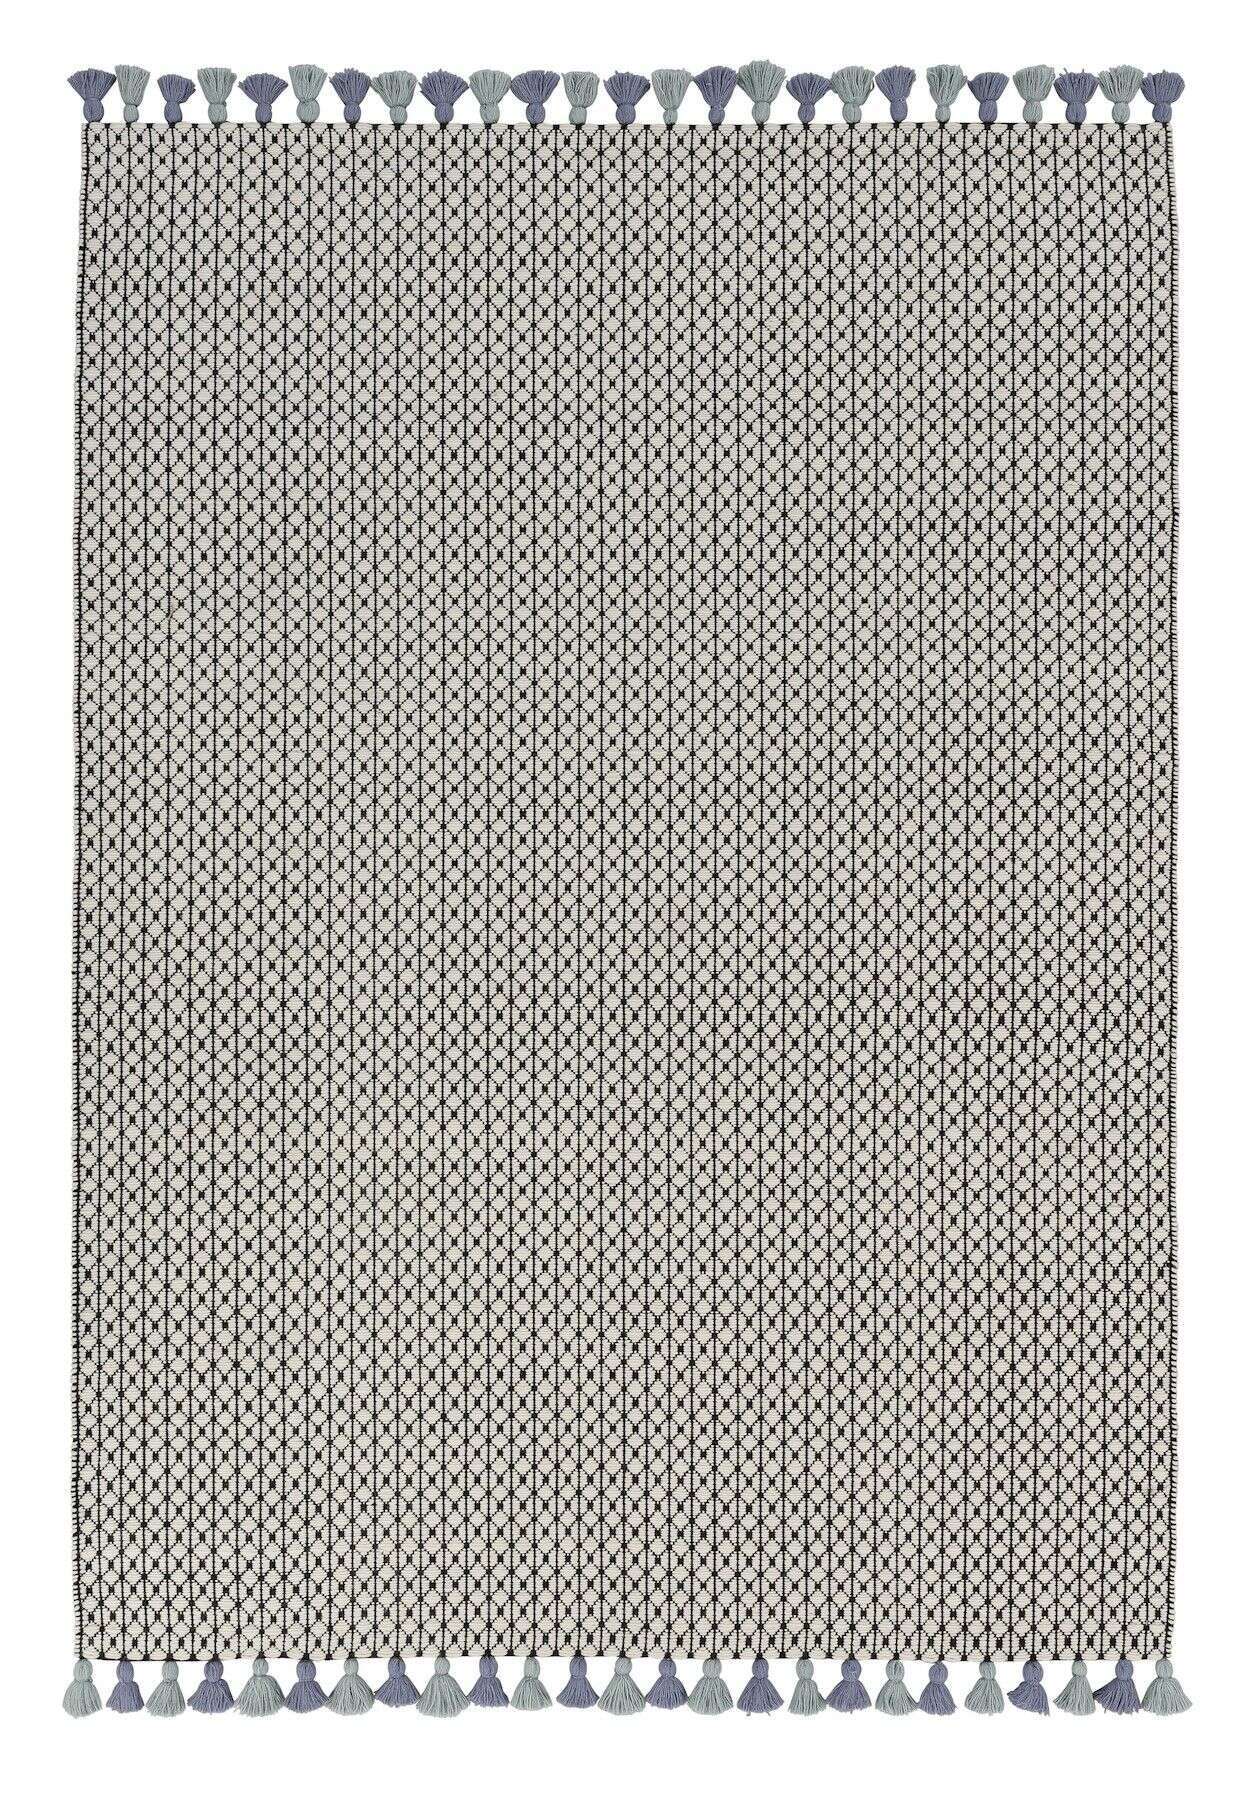 SCHÖNER WOHNEN Teppich Insula 6016-191 Naturteppich Handgewebt